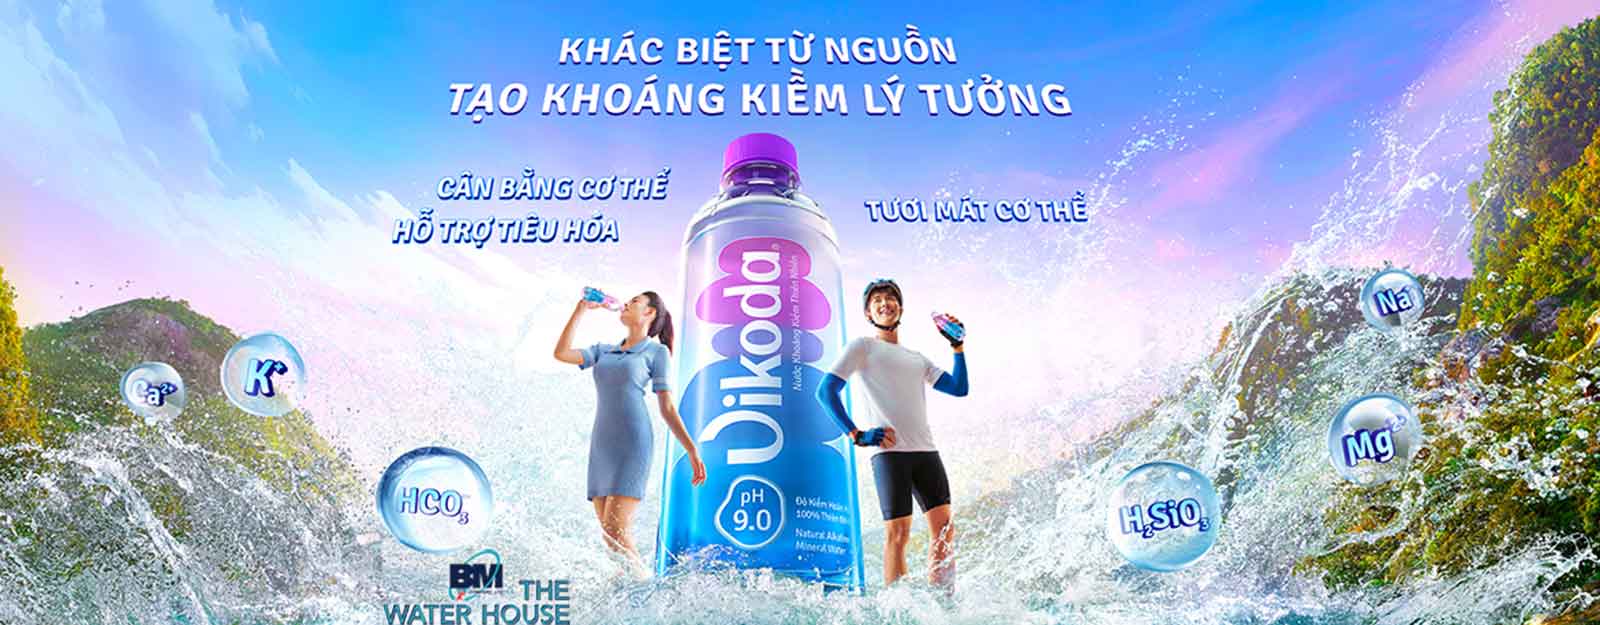 Đổi nước đem đến thương hiệu Vikoda, Đảnh Thạnh